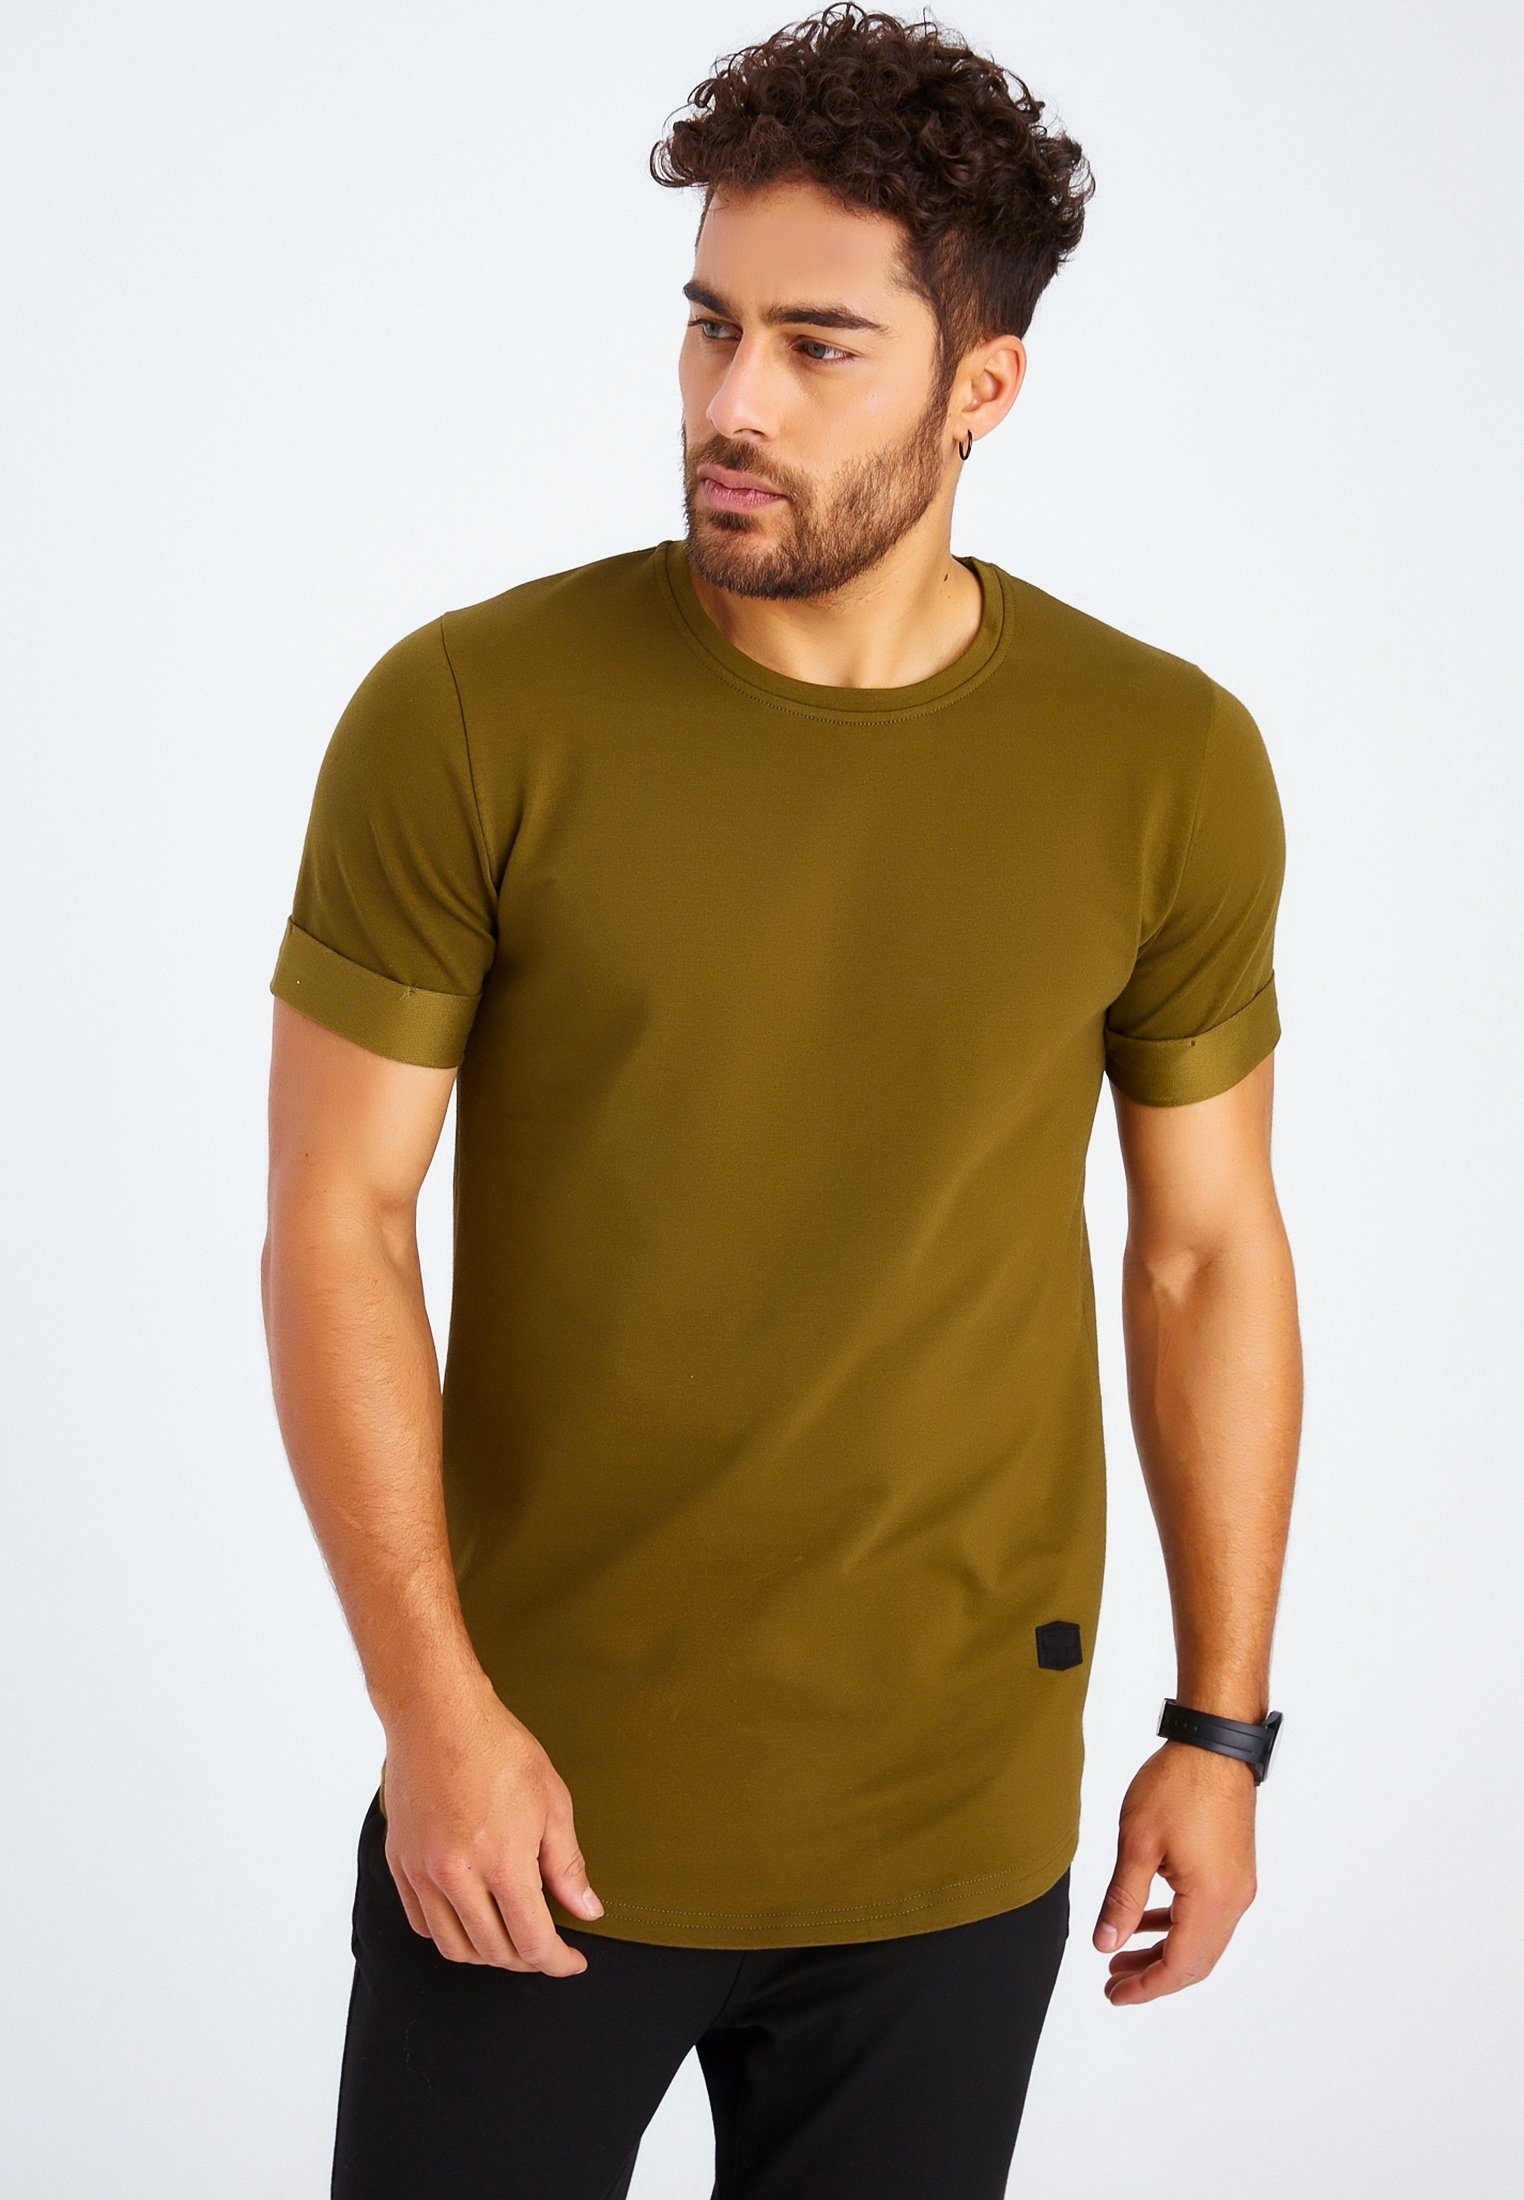 Leif Nelson T-Shirt Herren T-Shirt khaki Rundhals LN-6368